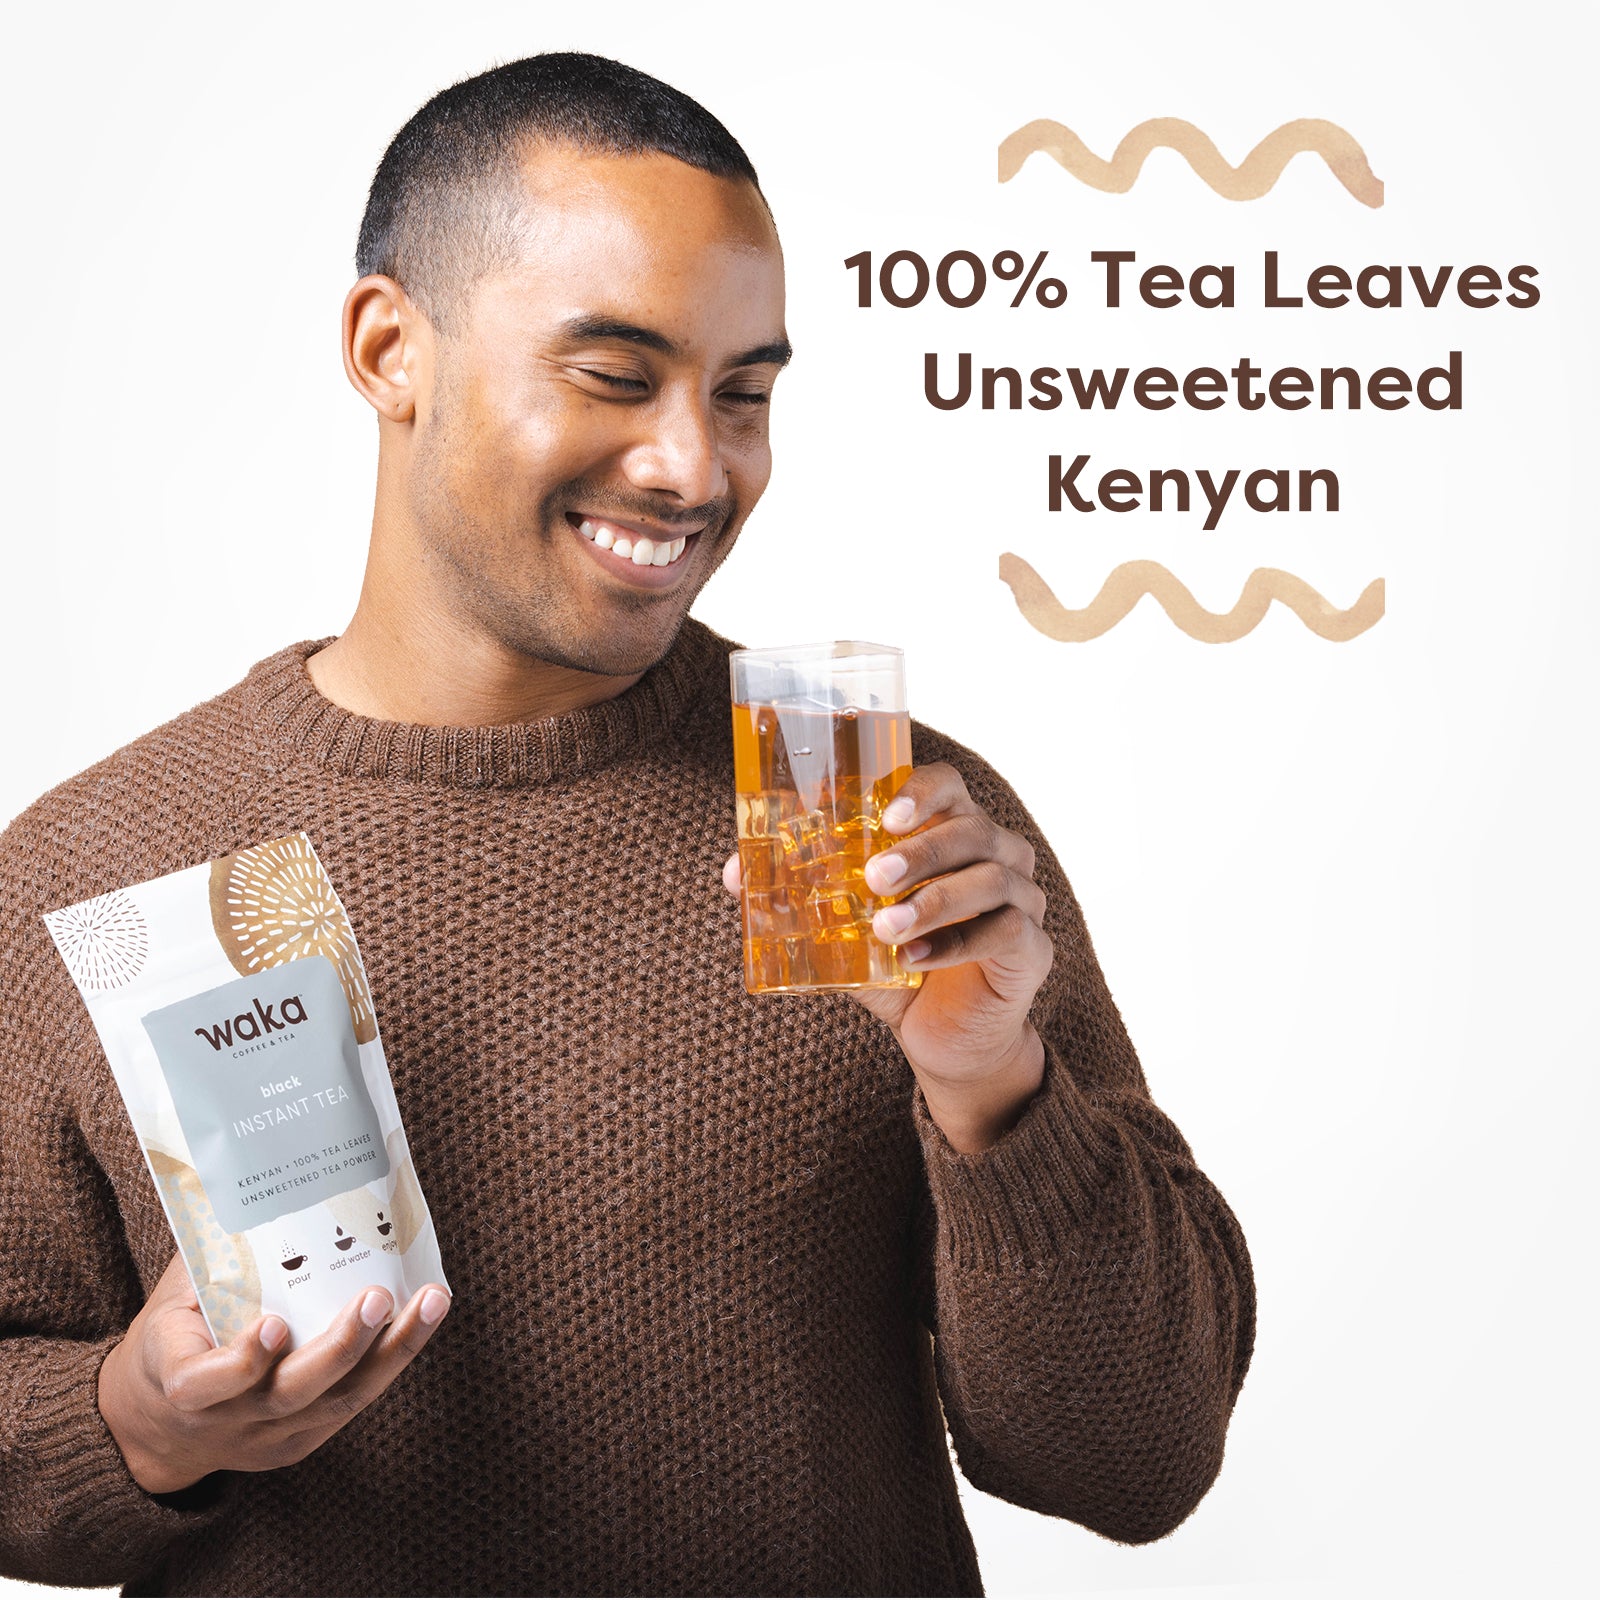 Kenyan Black Instant Tea 4.5 oz Bag